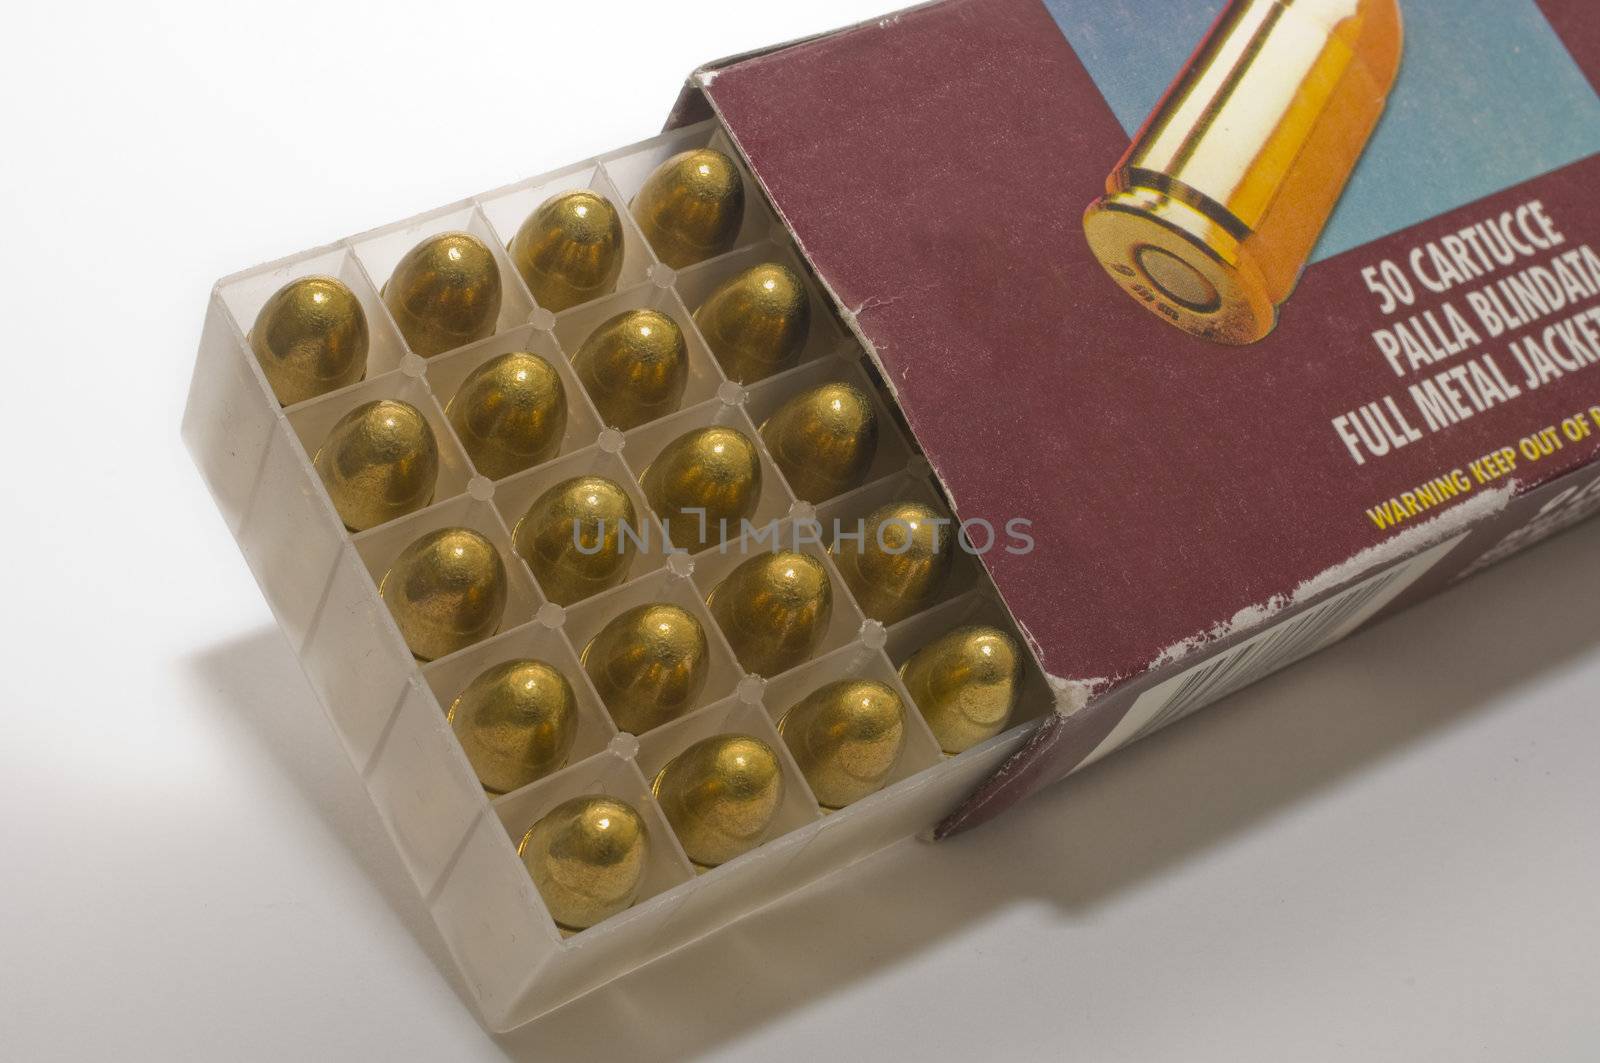 Open box of 9 mm pistol cartridges